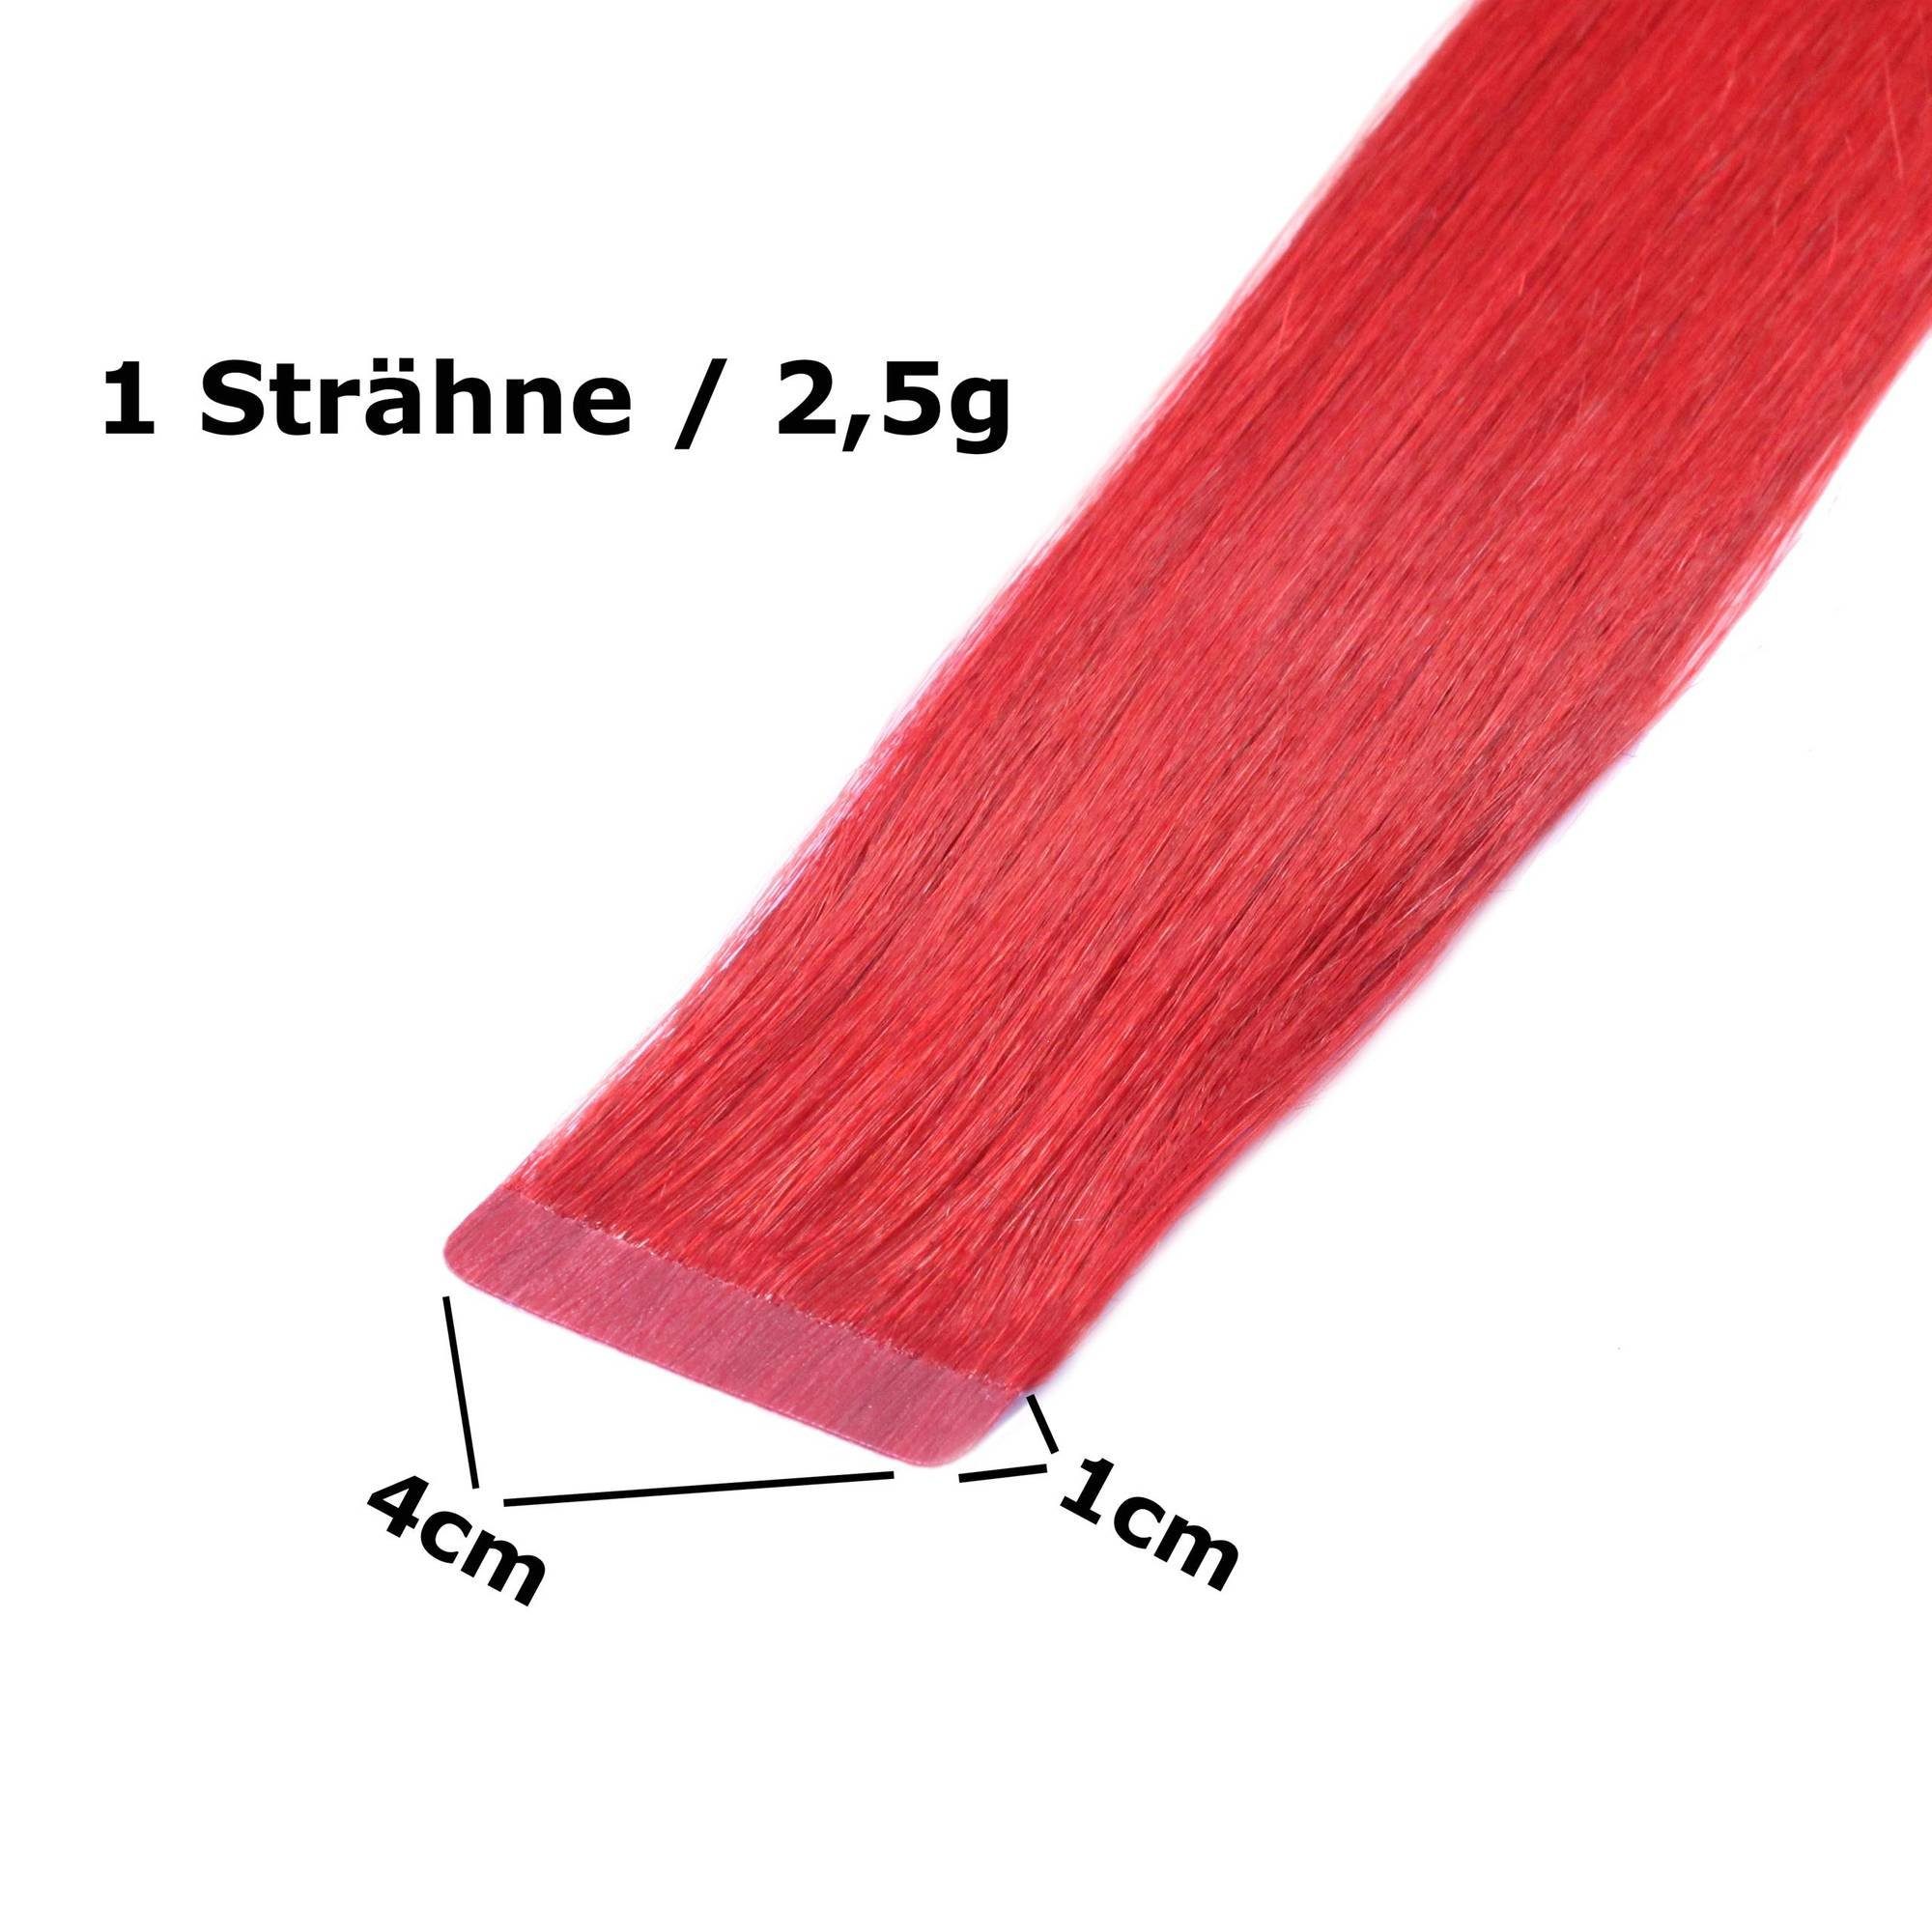 Tape hair2heart #10/1 glatt Hell-Lichtblond Asch Echthaar-Extension Extensions 40cm